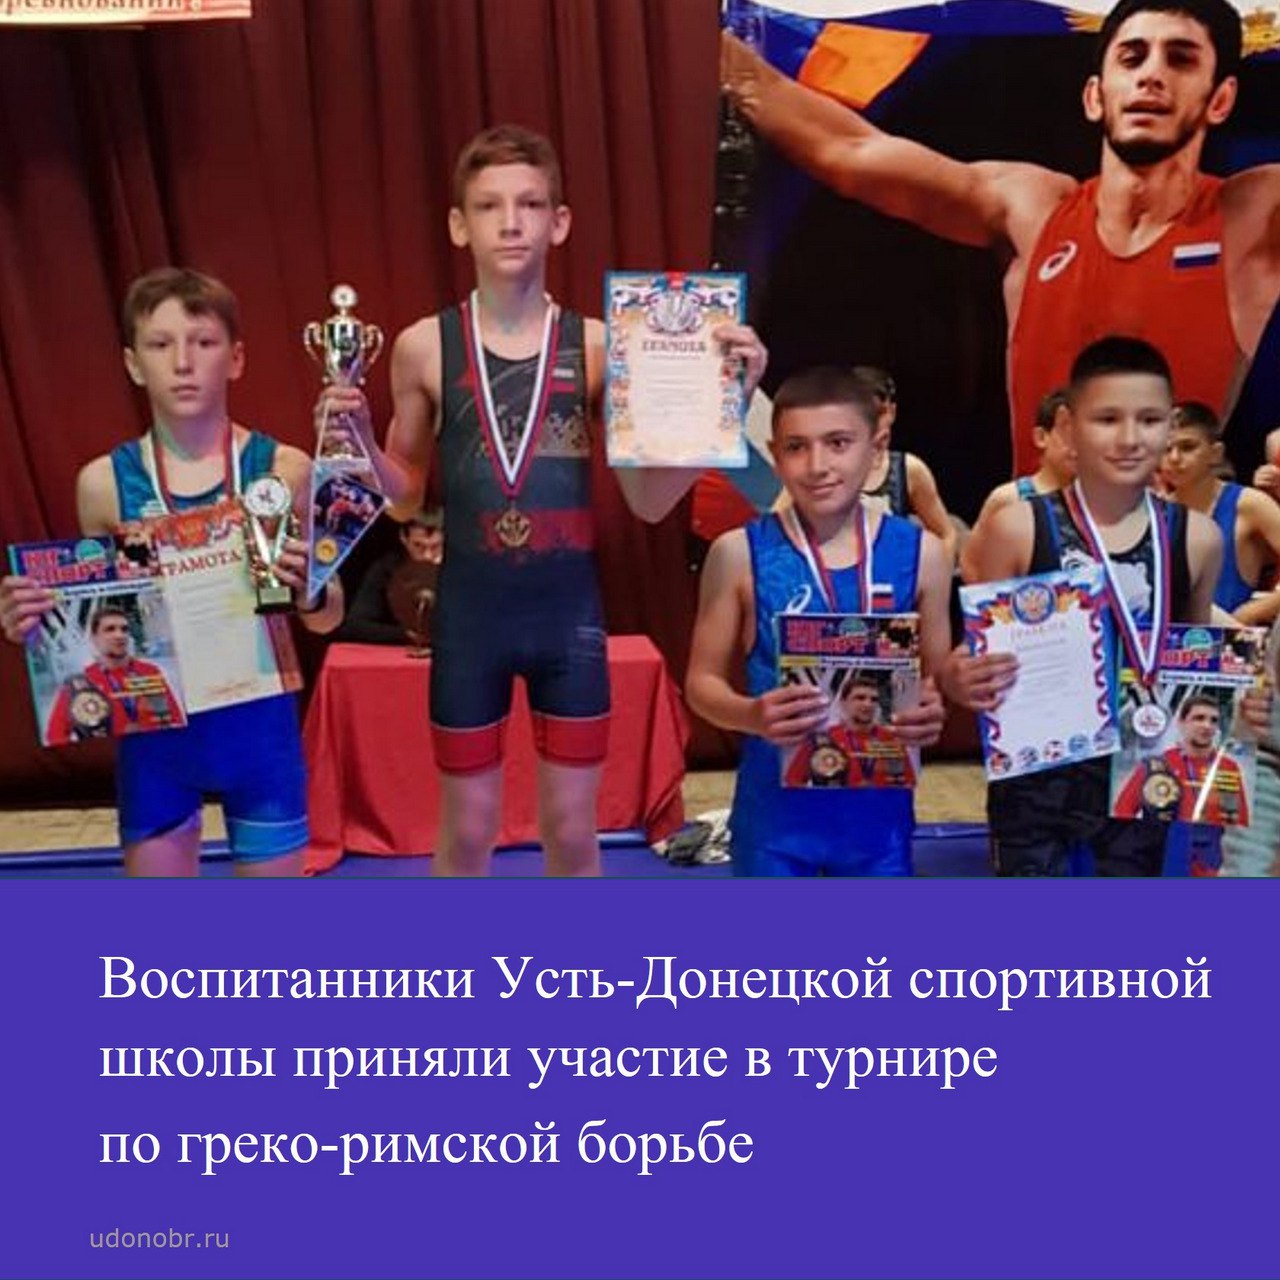 Воспитанники Усть-Донецкой спортивной школы приняли участие в турнире по греко-римской борьбе